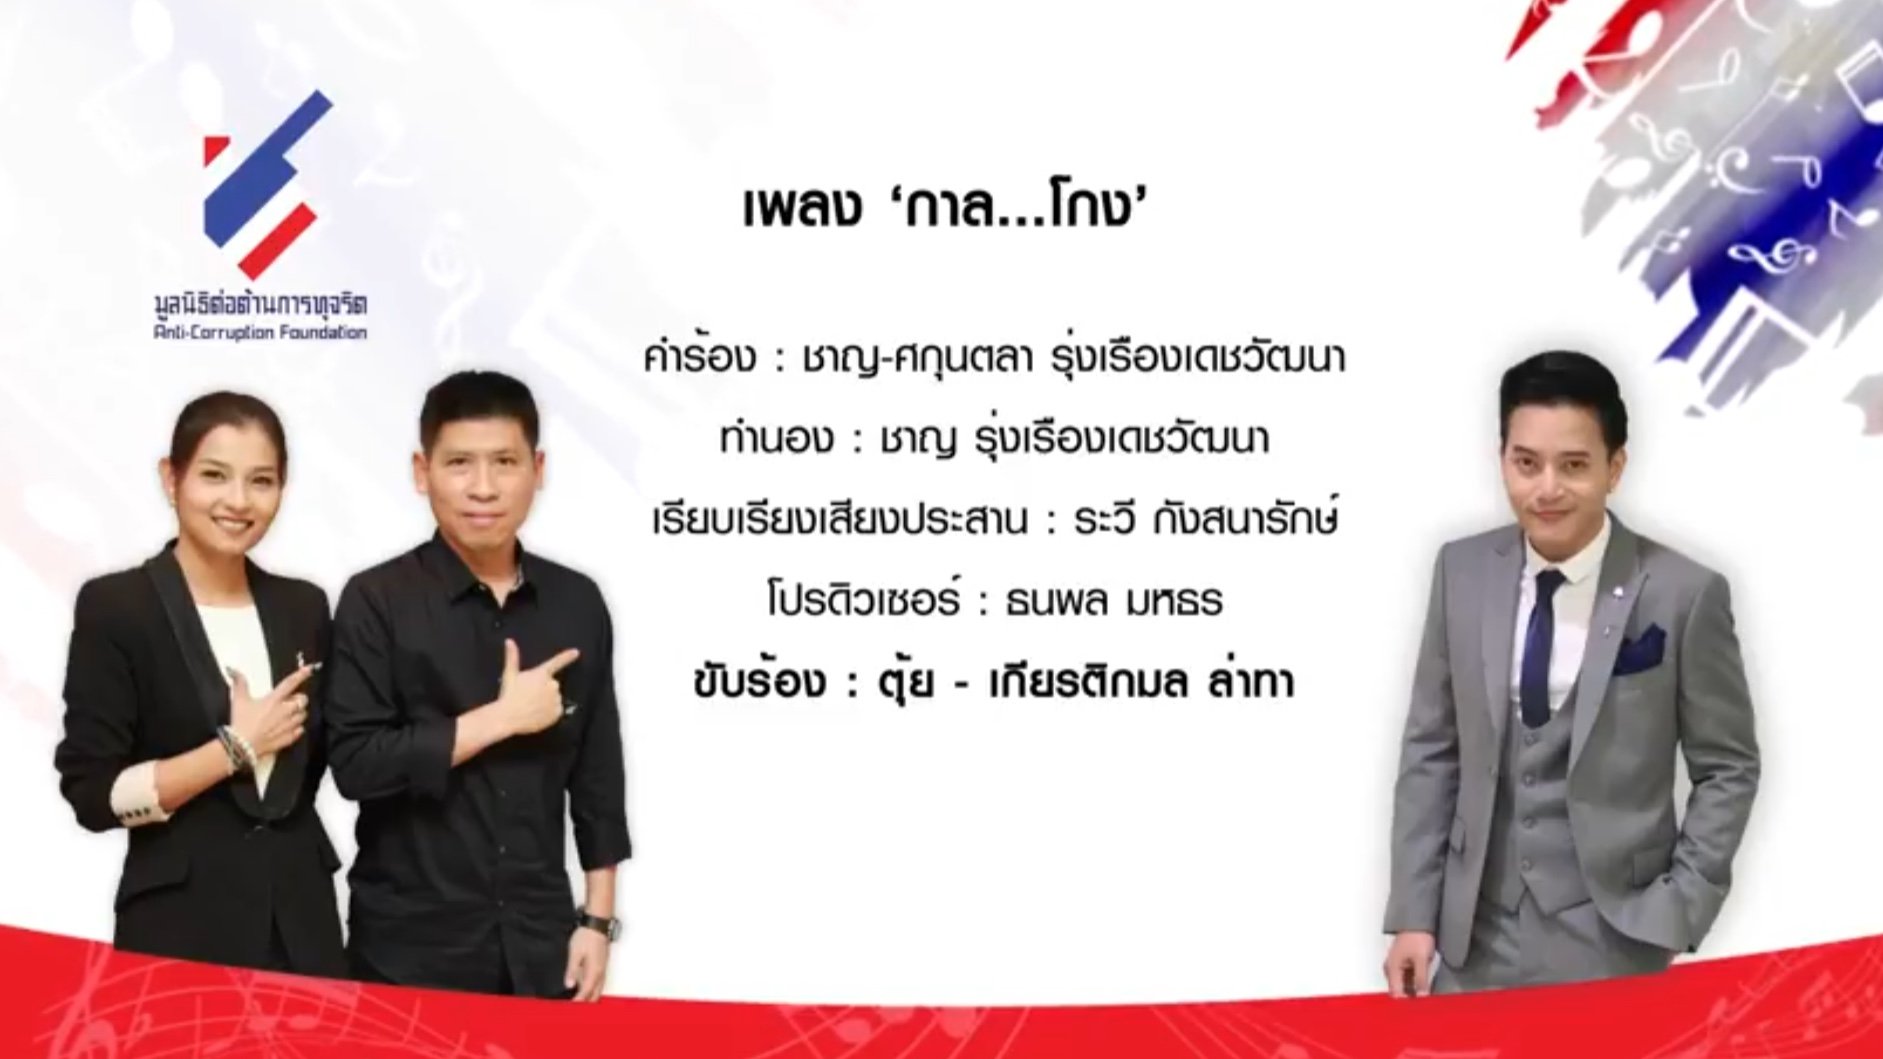 รายการ “คนไทยไม่ทนต่อการทุจริต” วันอาทิตย์ที่ 4 มีนาคม 2561 เวลา 18.20-1900 น.